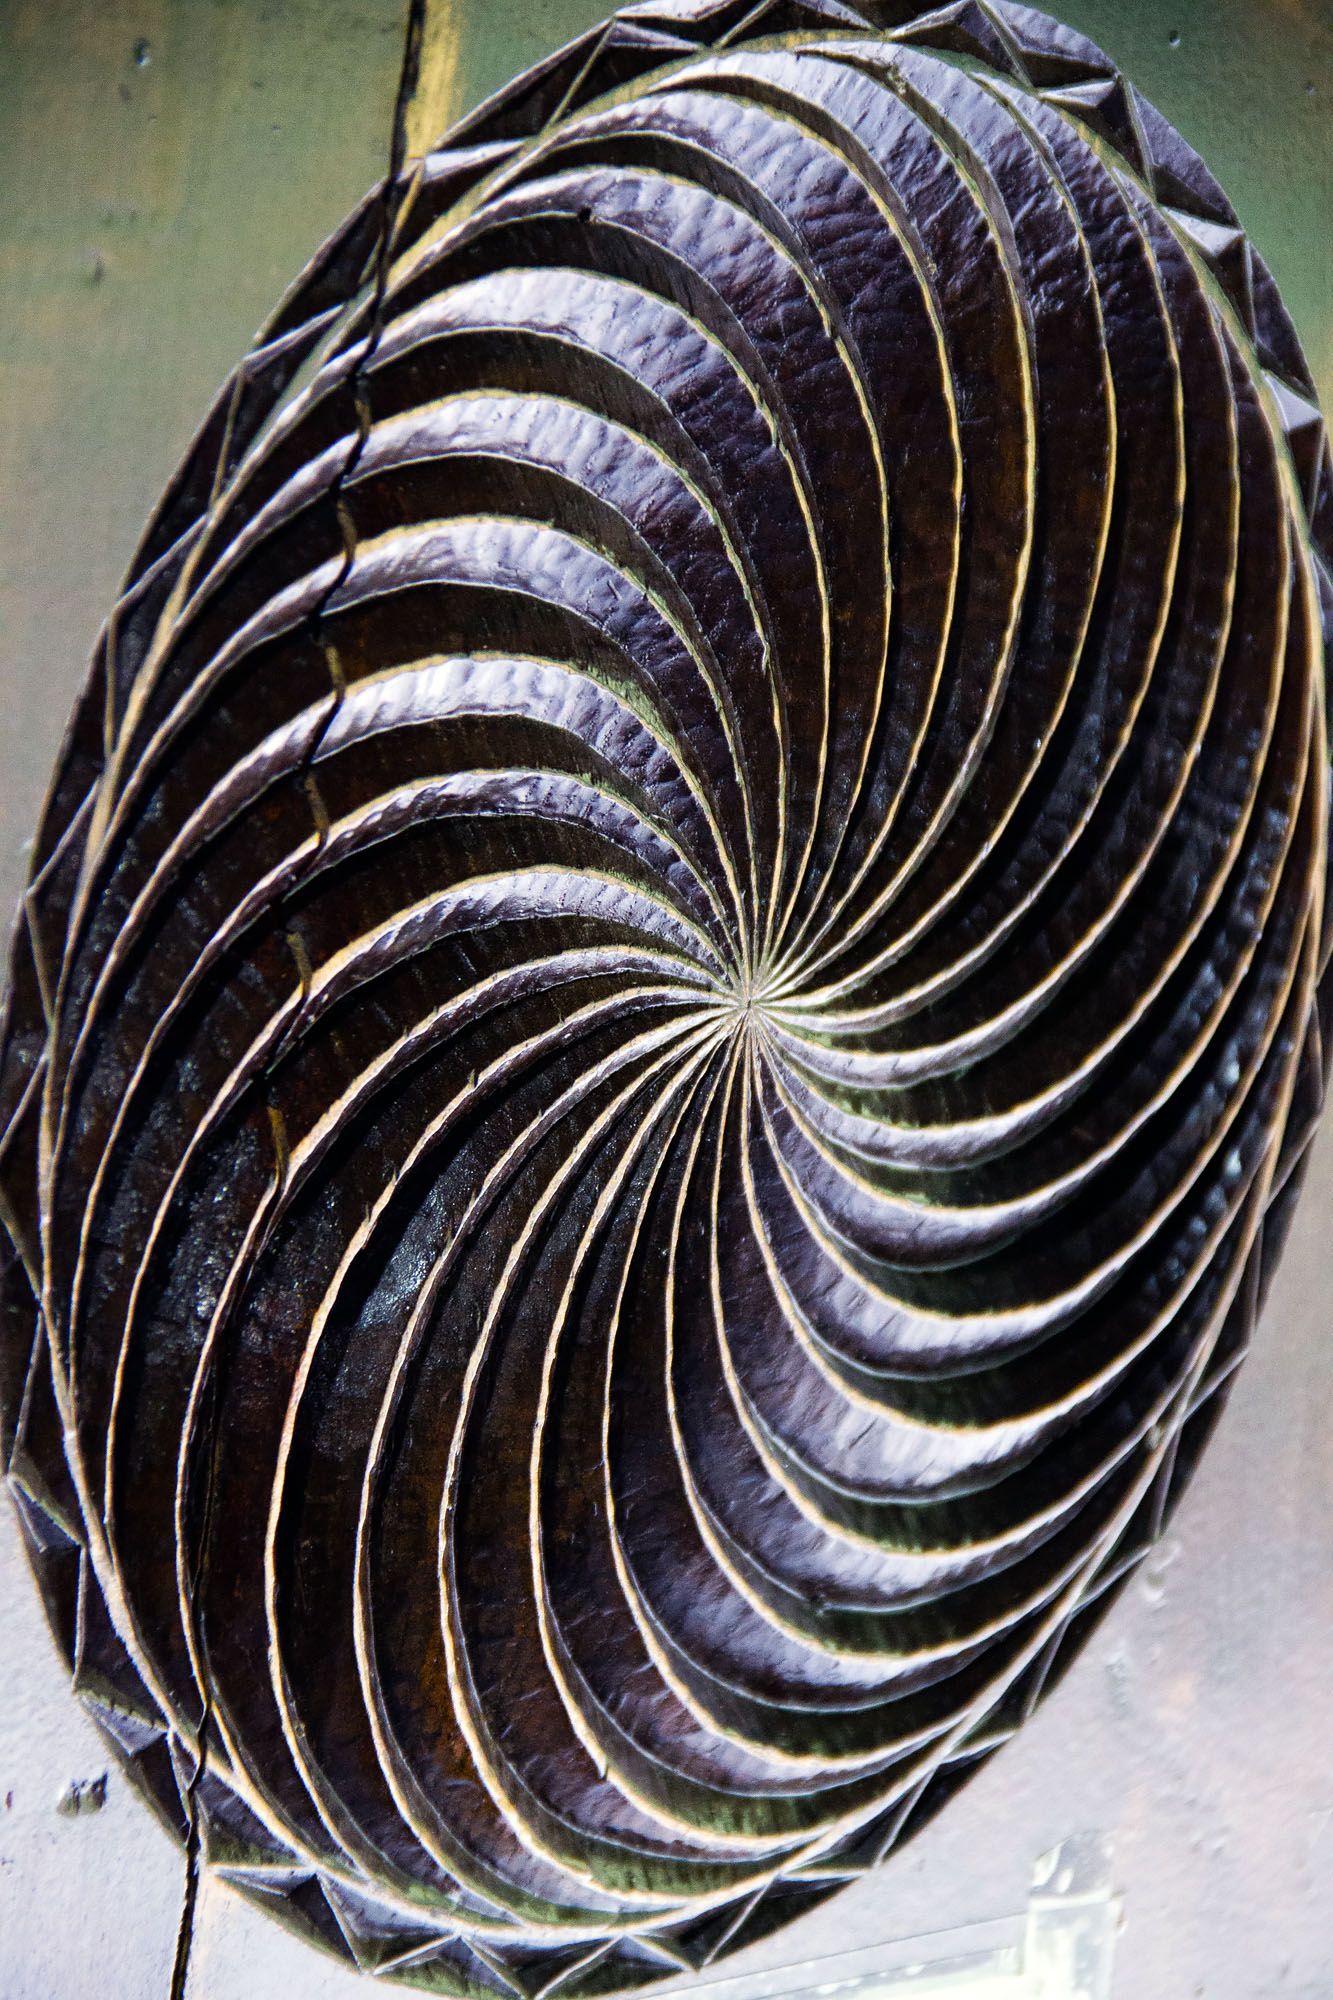 Asturias folklore spiral